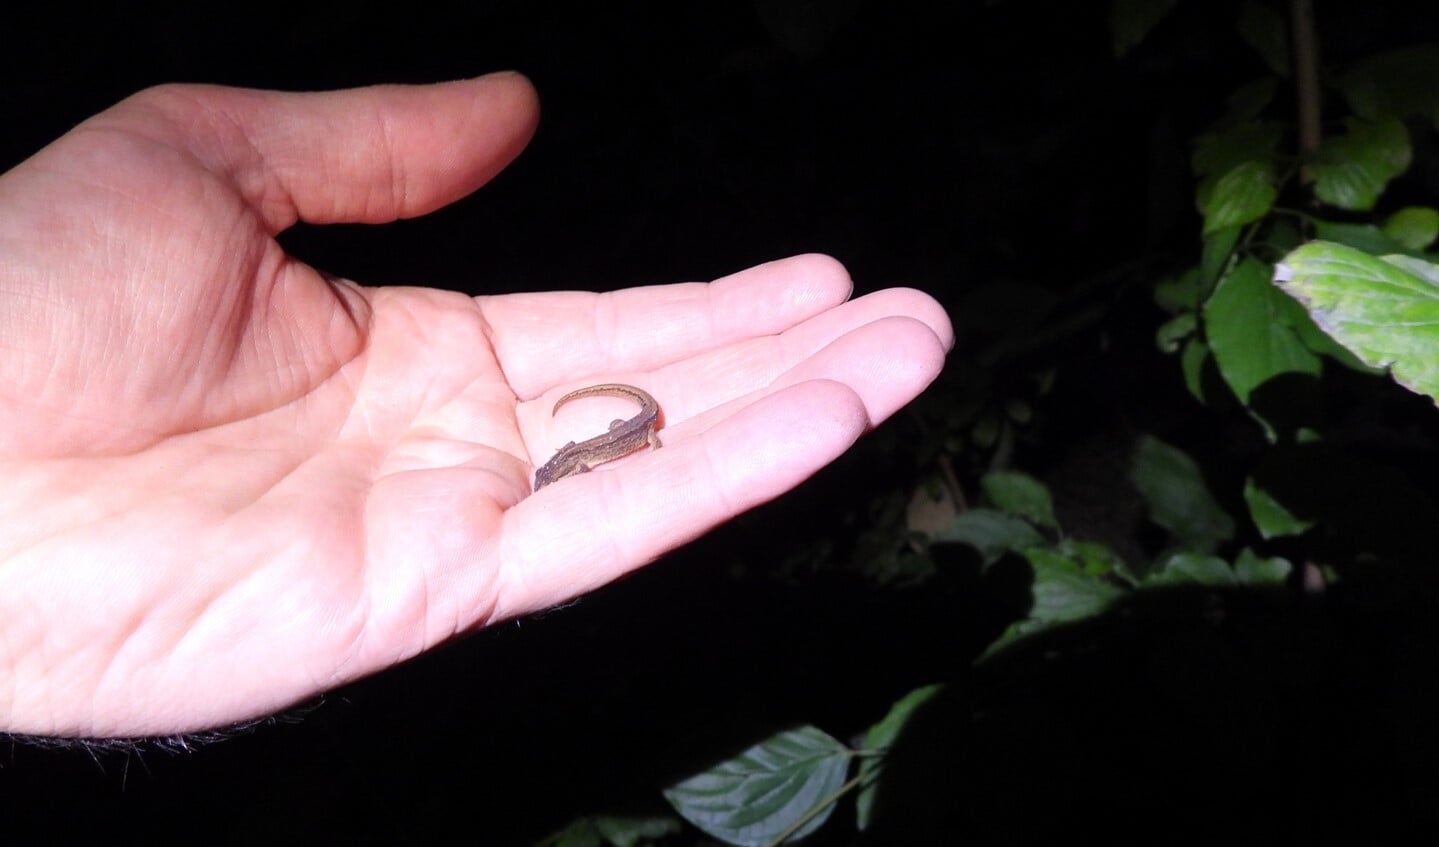  Zo klein is de kleine watersalamander. Op weg naar een plekje in de tuin.
